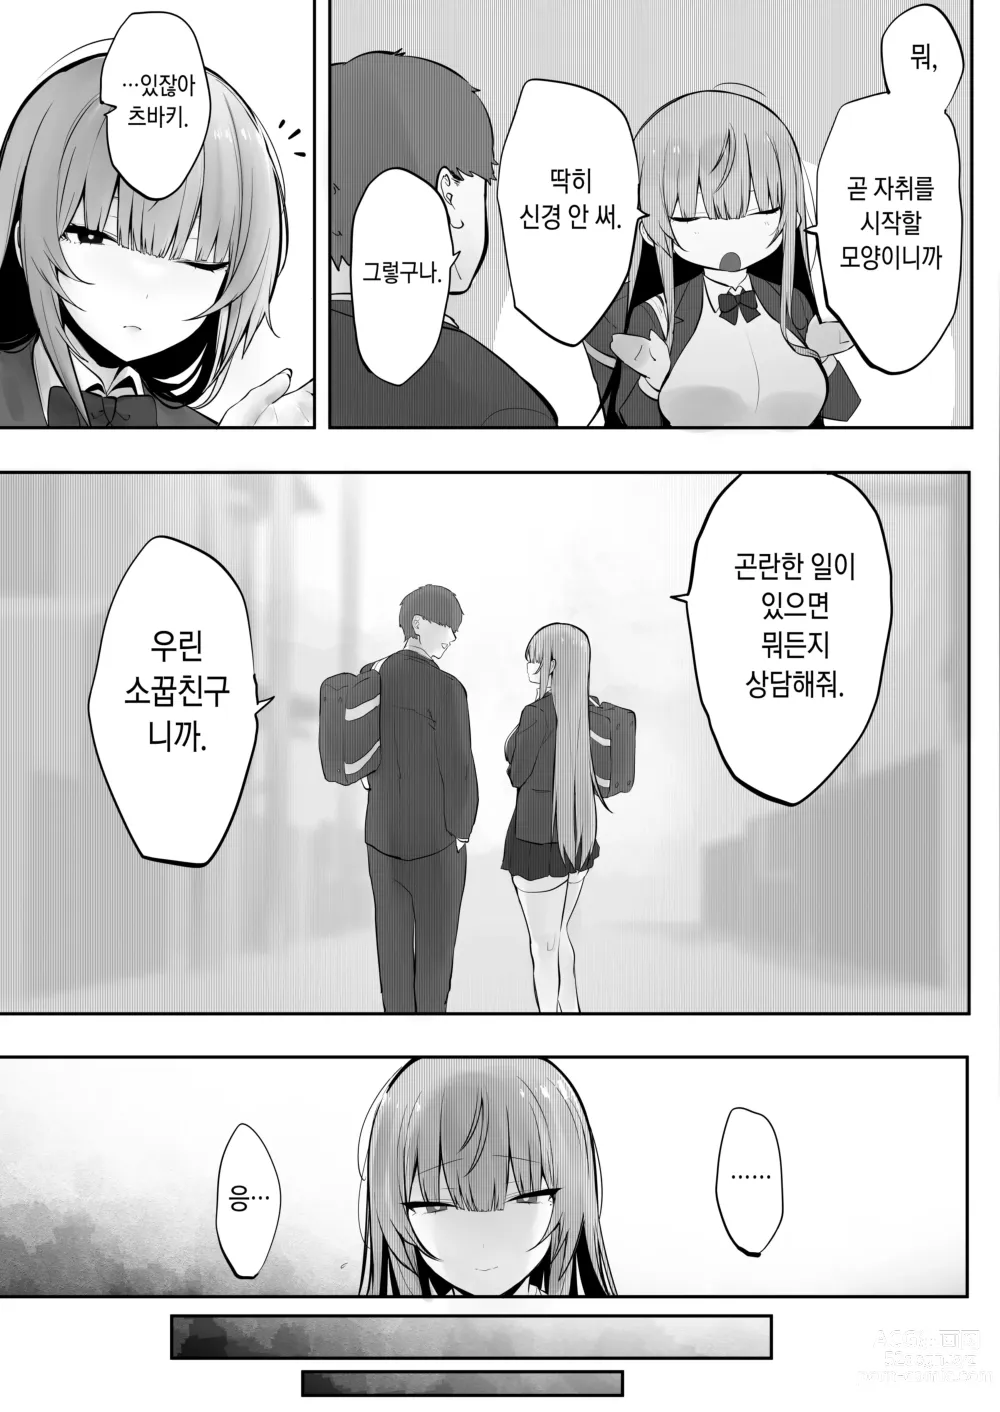 Page 6 of doujinshi Ani ni Netorare Ochita Tsubaki｜양오빠에게 빼앗겨 타락한 츠바키